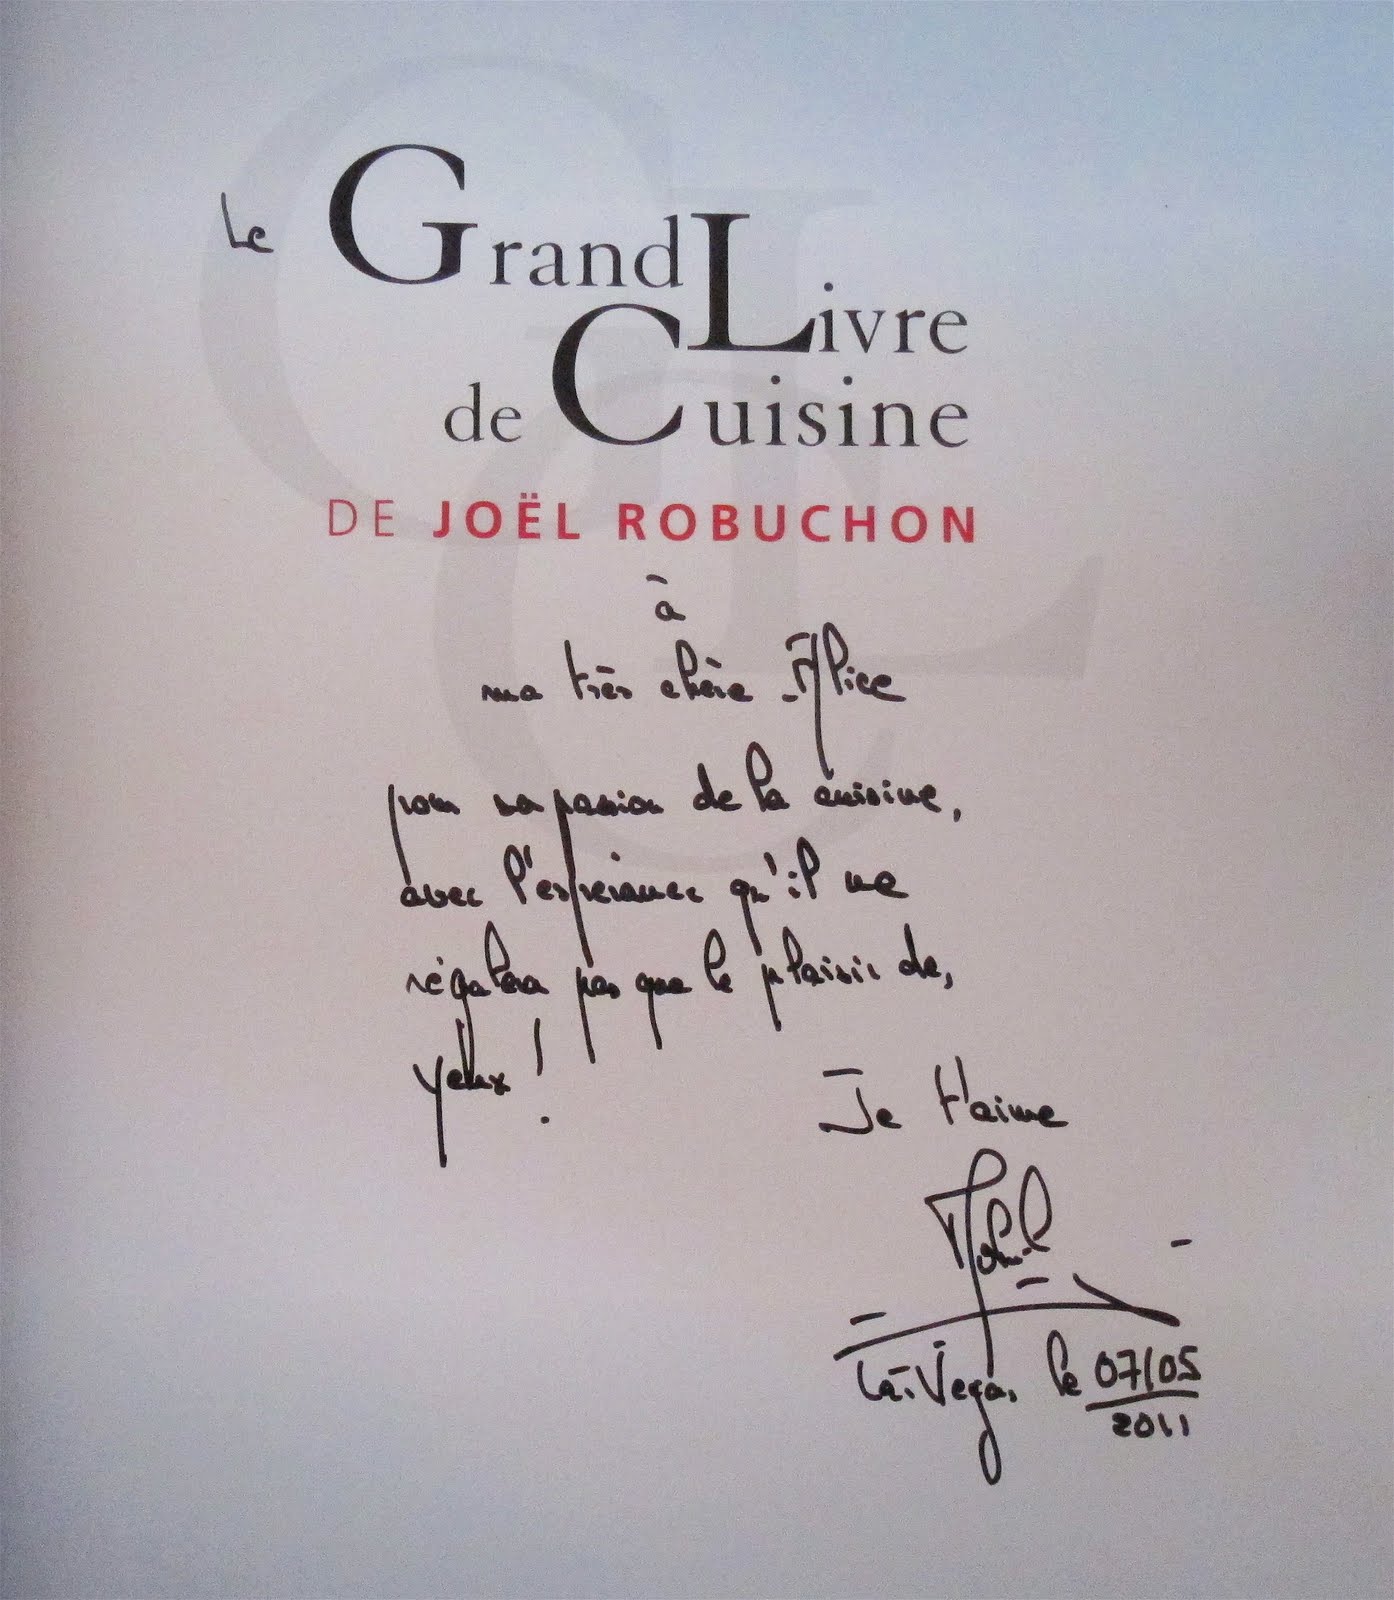 Food For Film Stylists®: Chef Joel Robuchon's Le Grand Livre de